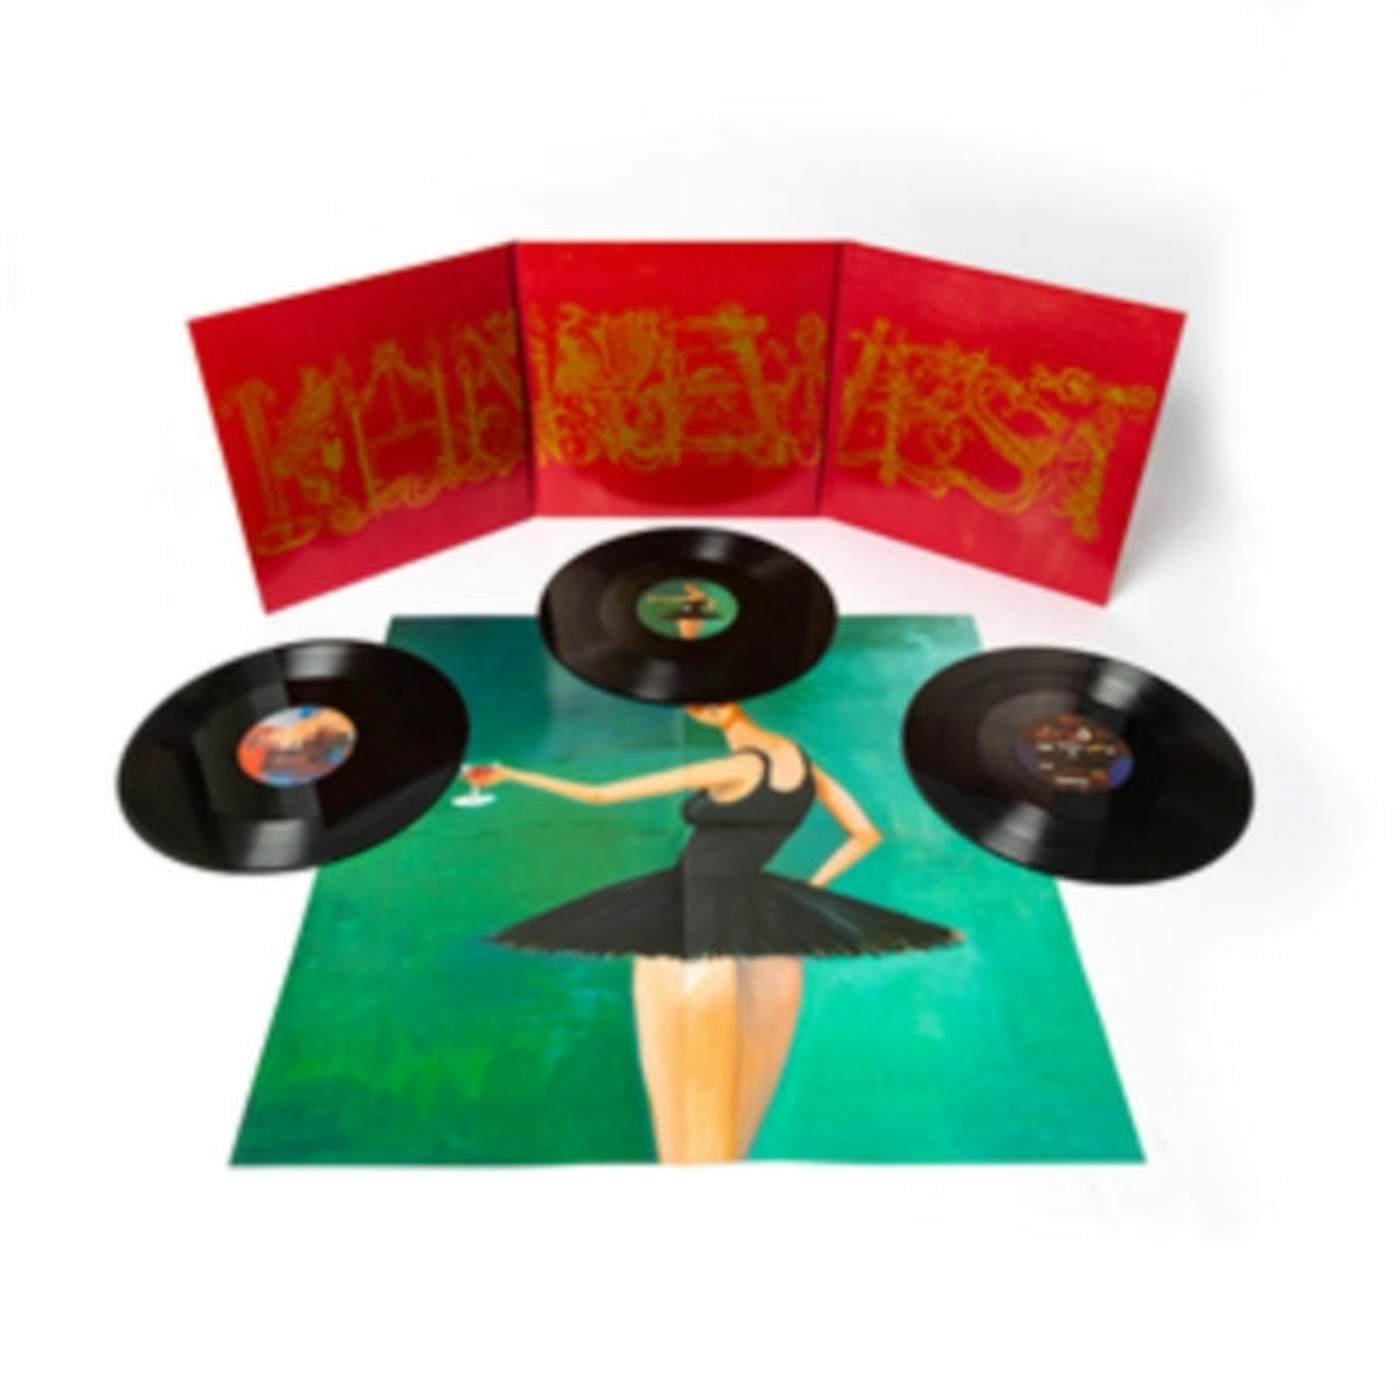 Kanye West Jesus Is King Vinyl Album Blue Vinyl 602508464669